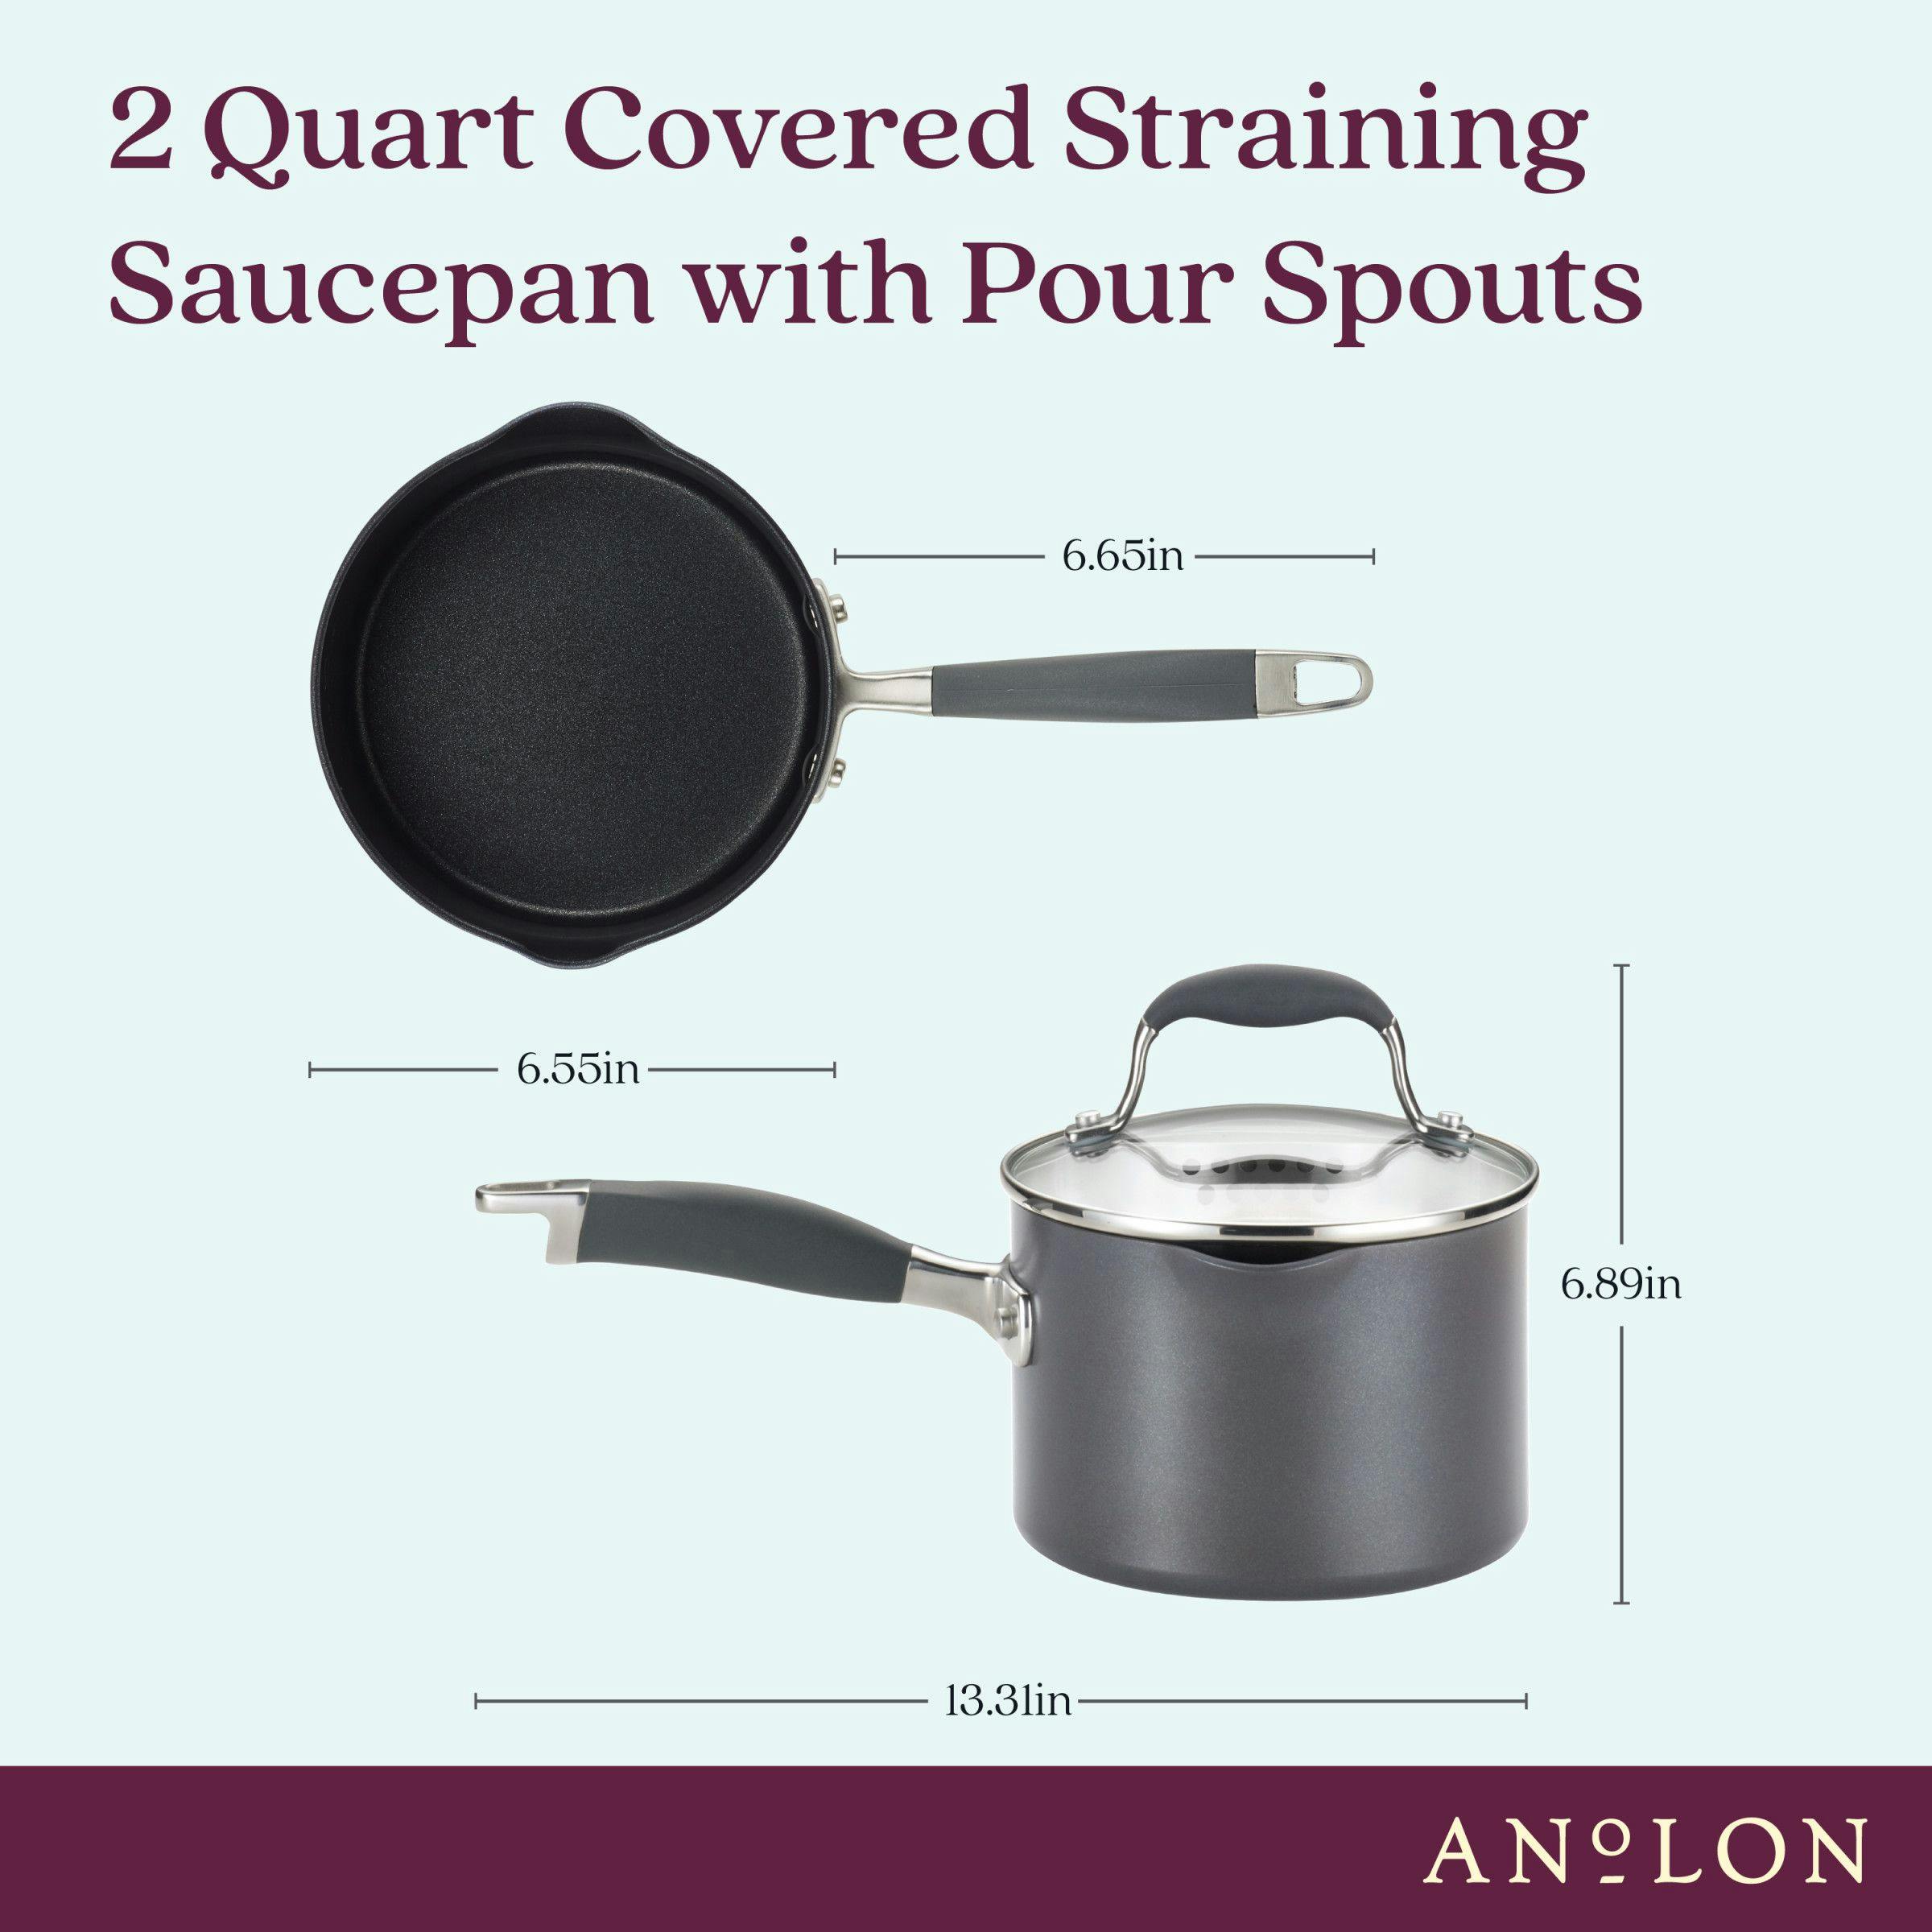 SCANPAN Classic Nonstick Saucepan with Pour Spouts, 2-Qt.